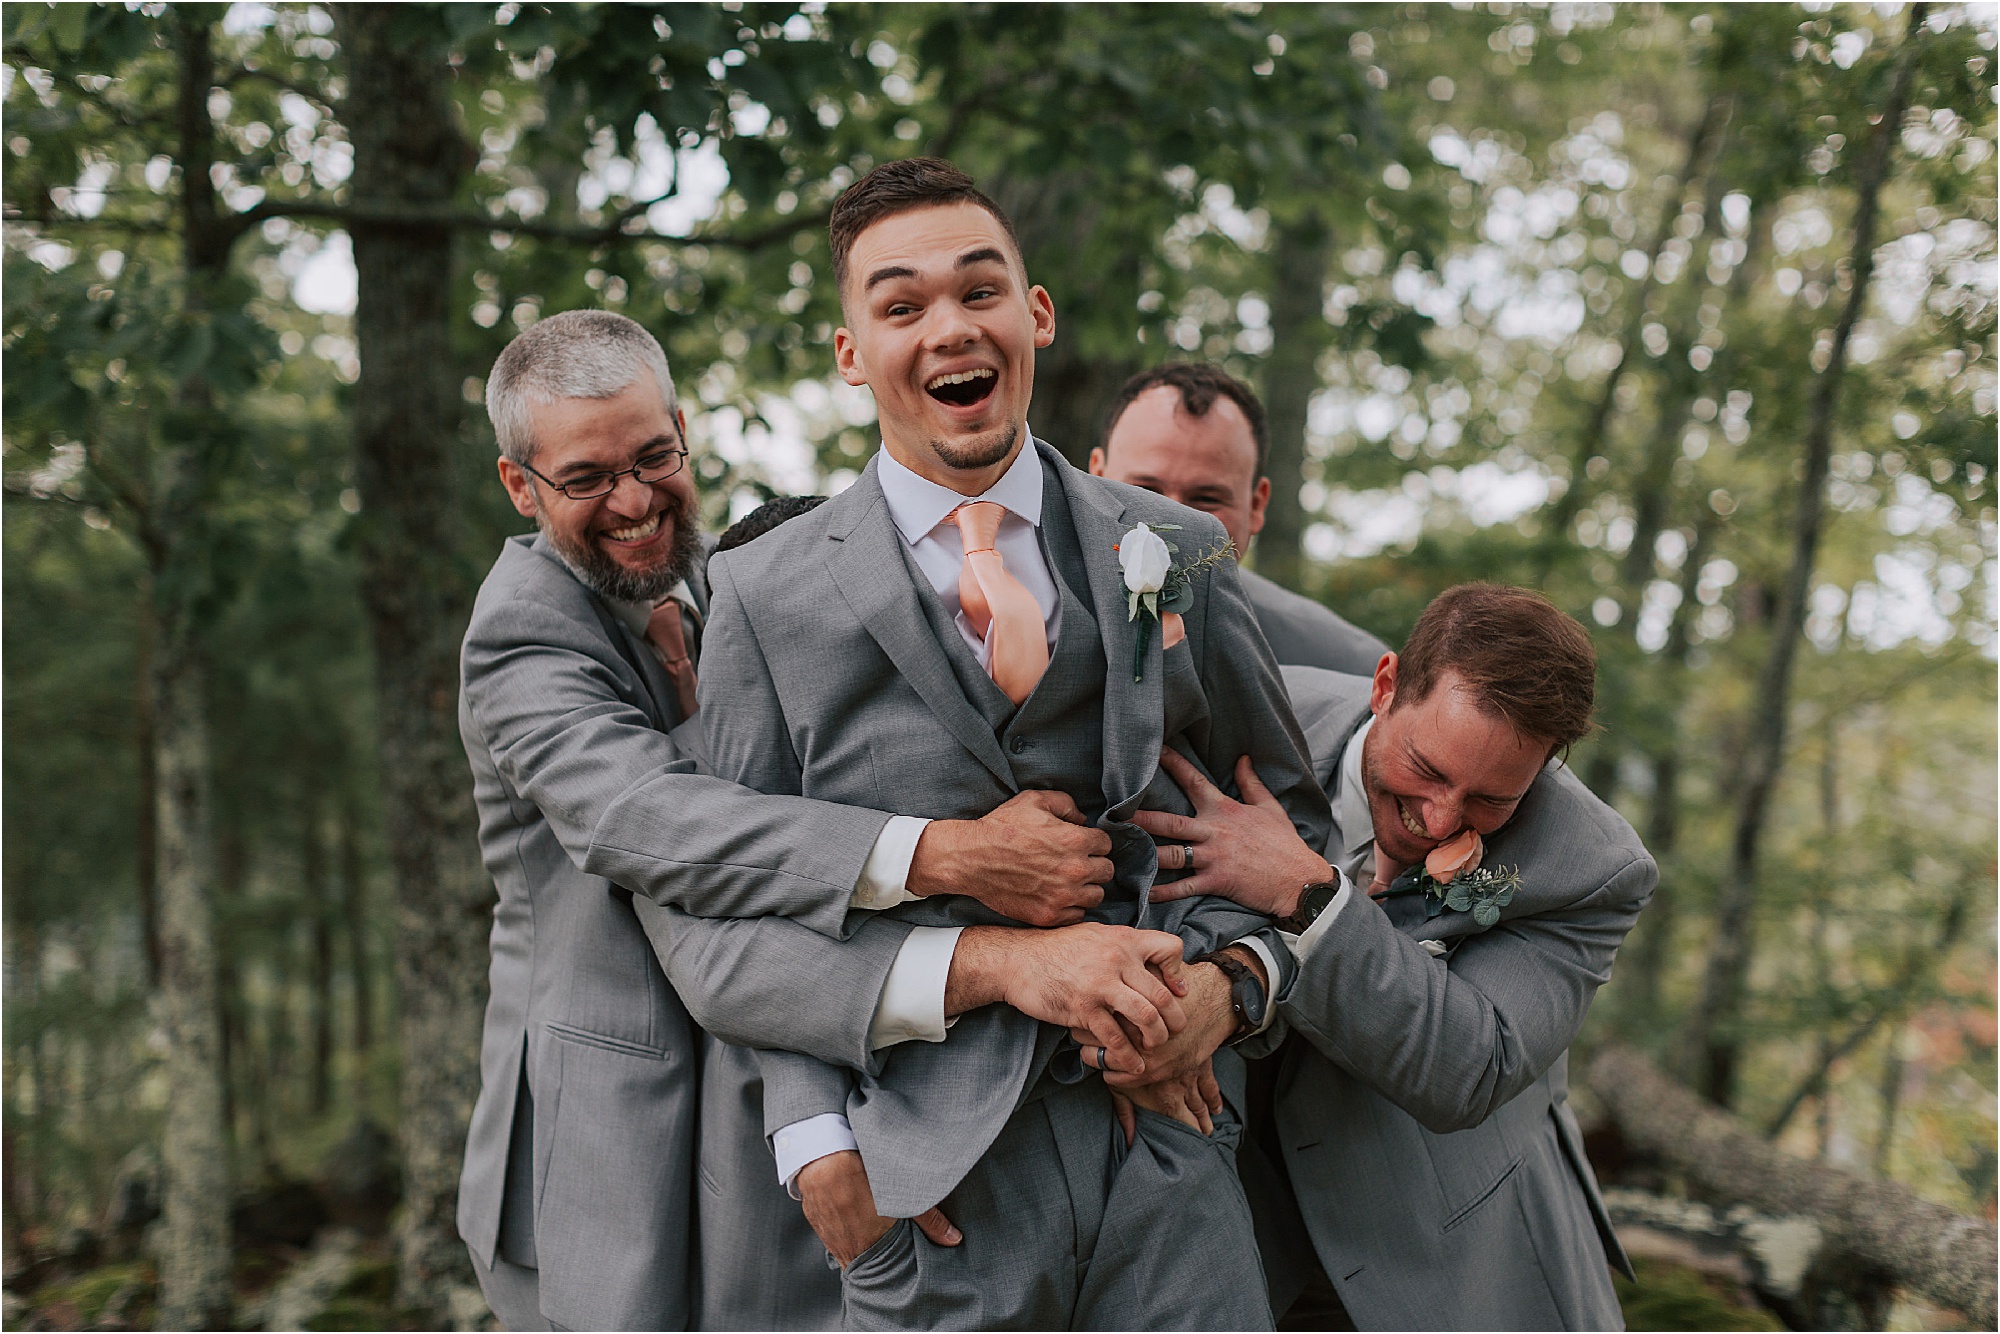 groomsmen in grey suits tackle groom